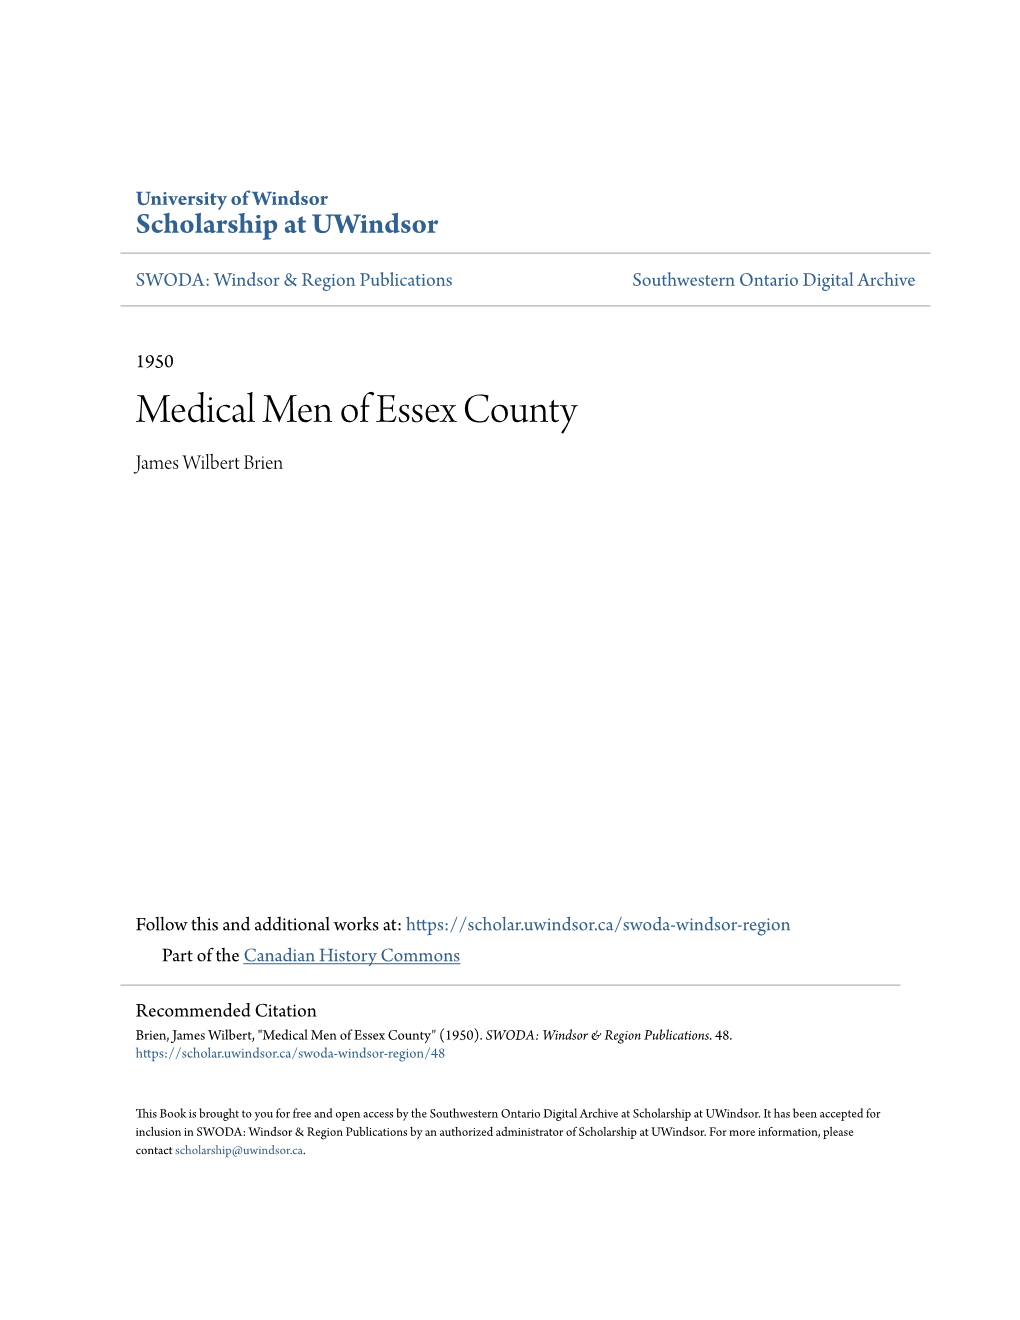 Medical Men of Essex County James Wilbert Brien